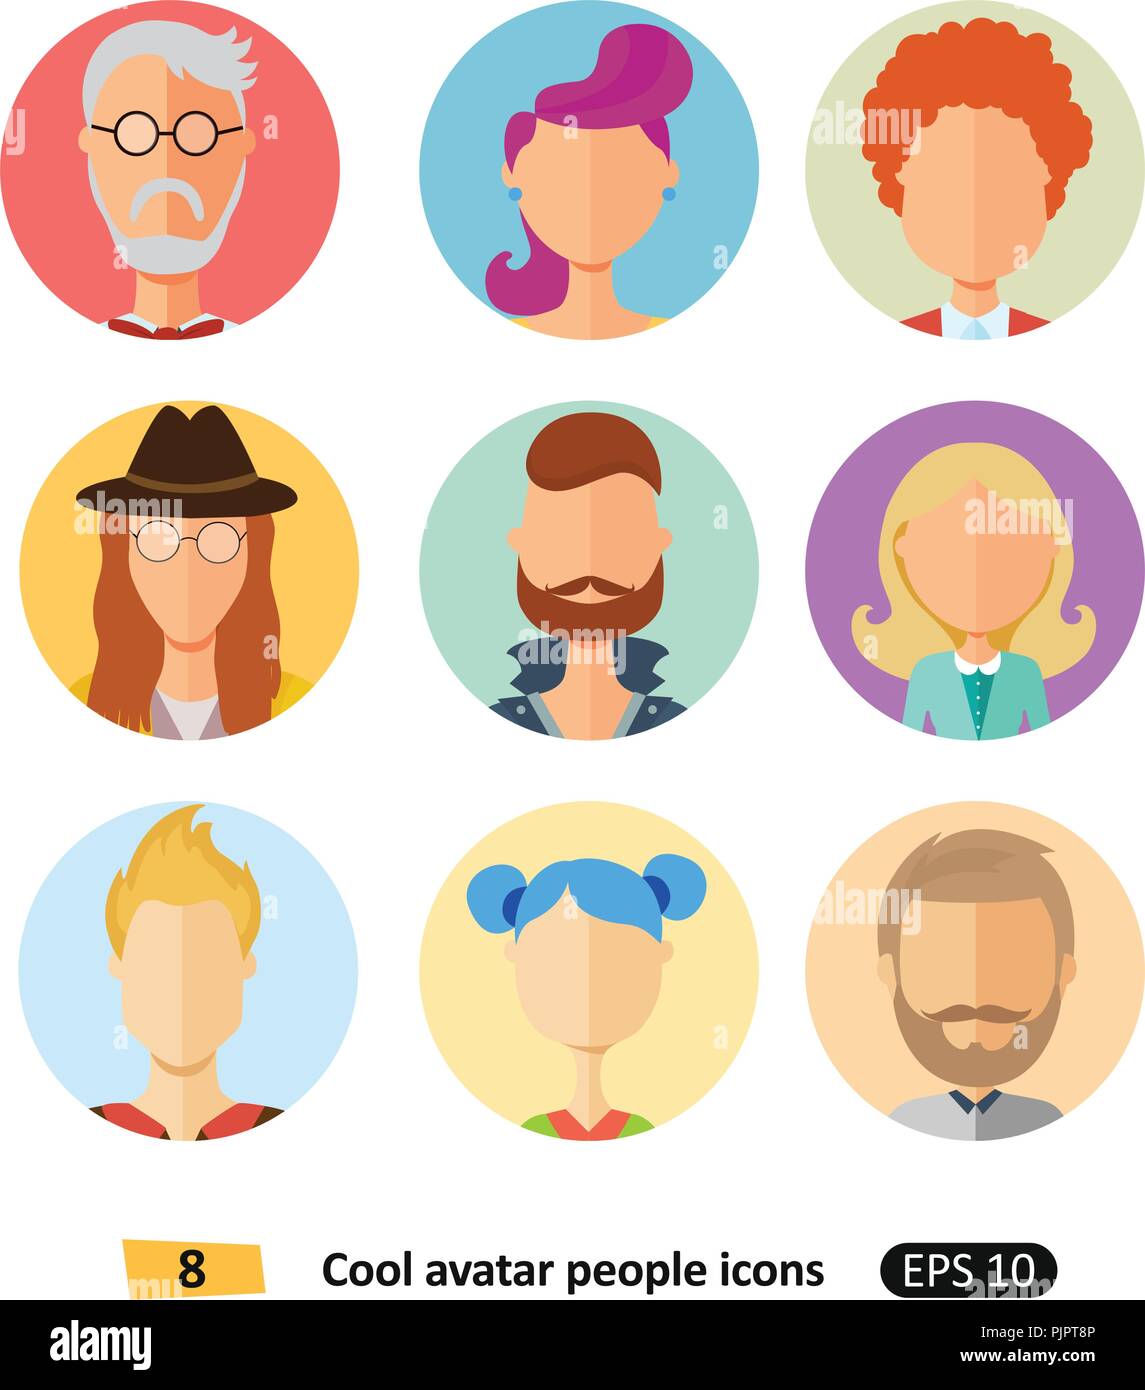 Satz von cool Avatare flachbild Symbole unterschiedliche Kleidung, Farben  und Frisuren modern und einfach flach Cartoon Stil für App  Stock-Vektorgrafik - Alamy